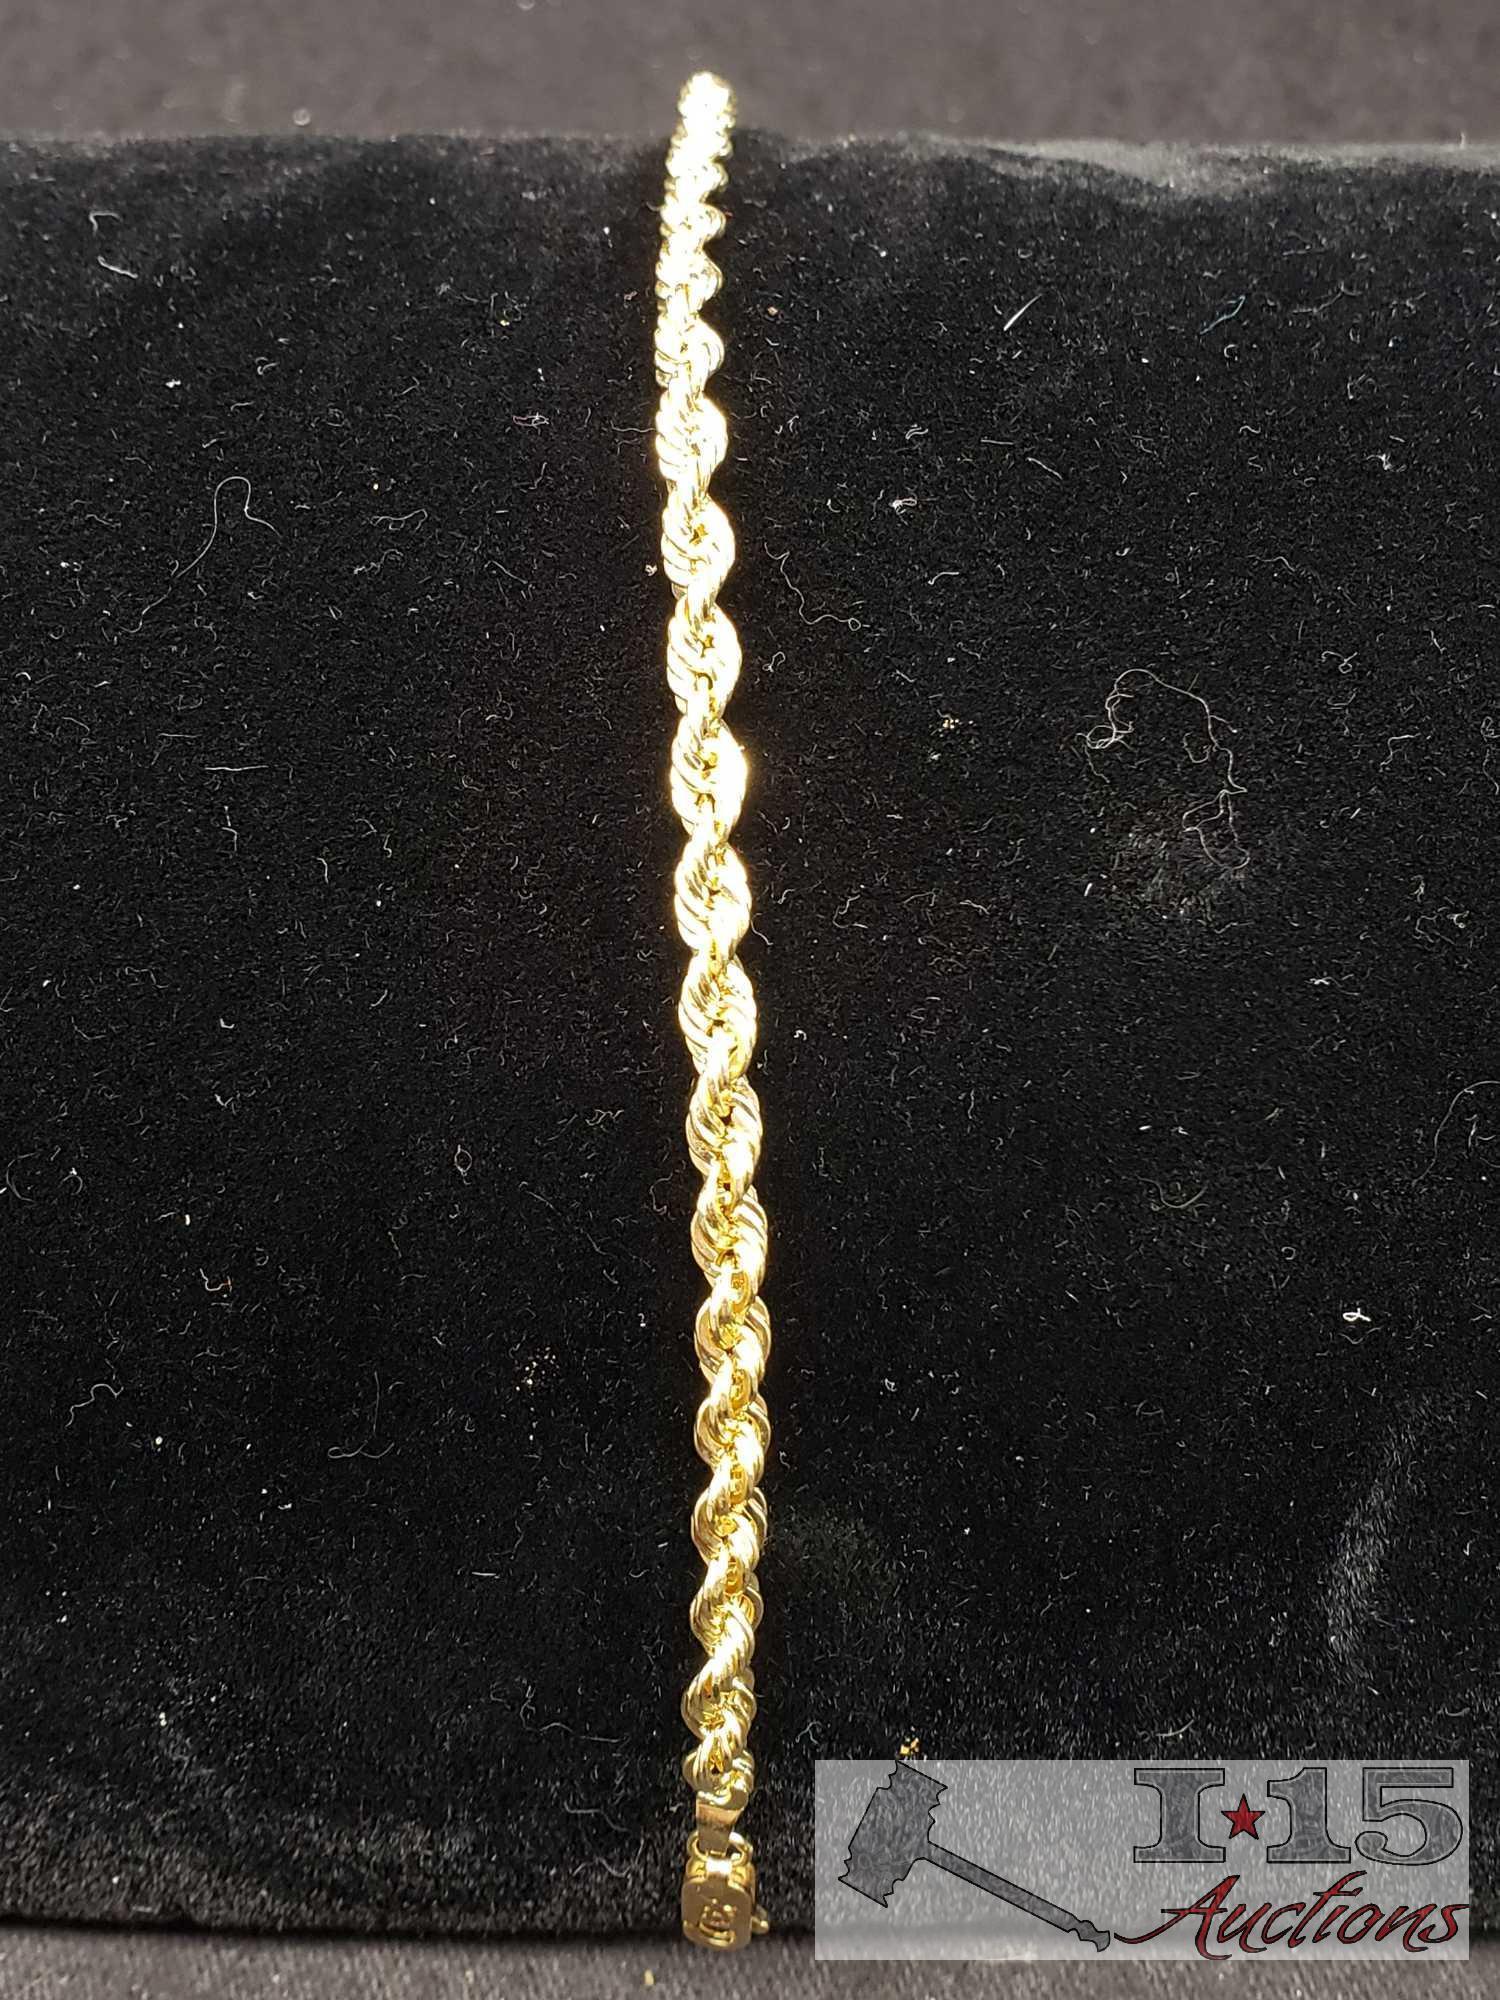 2 Mark Anthony Gold Bracelets Marked 14k and MA